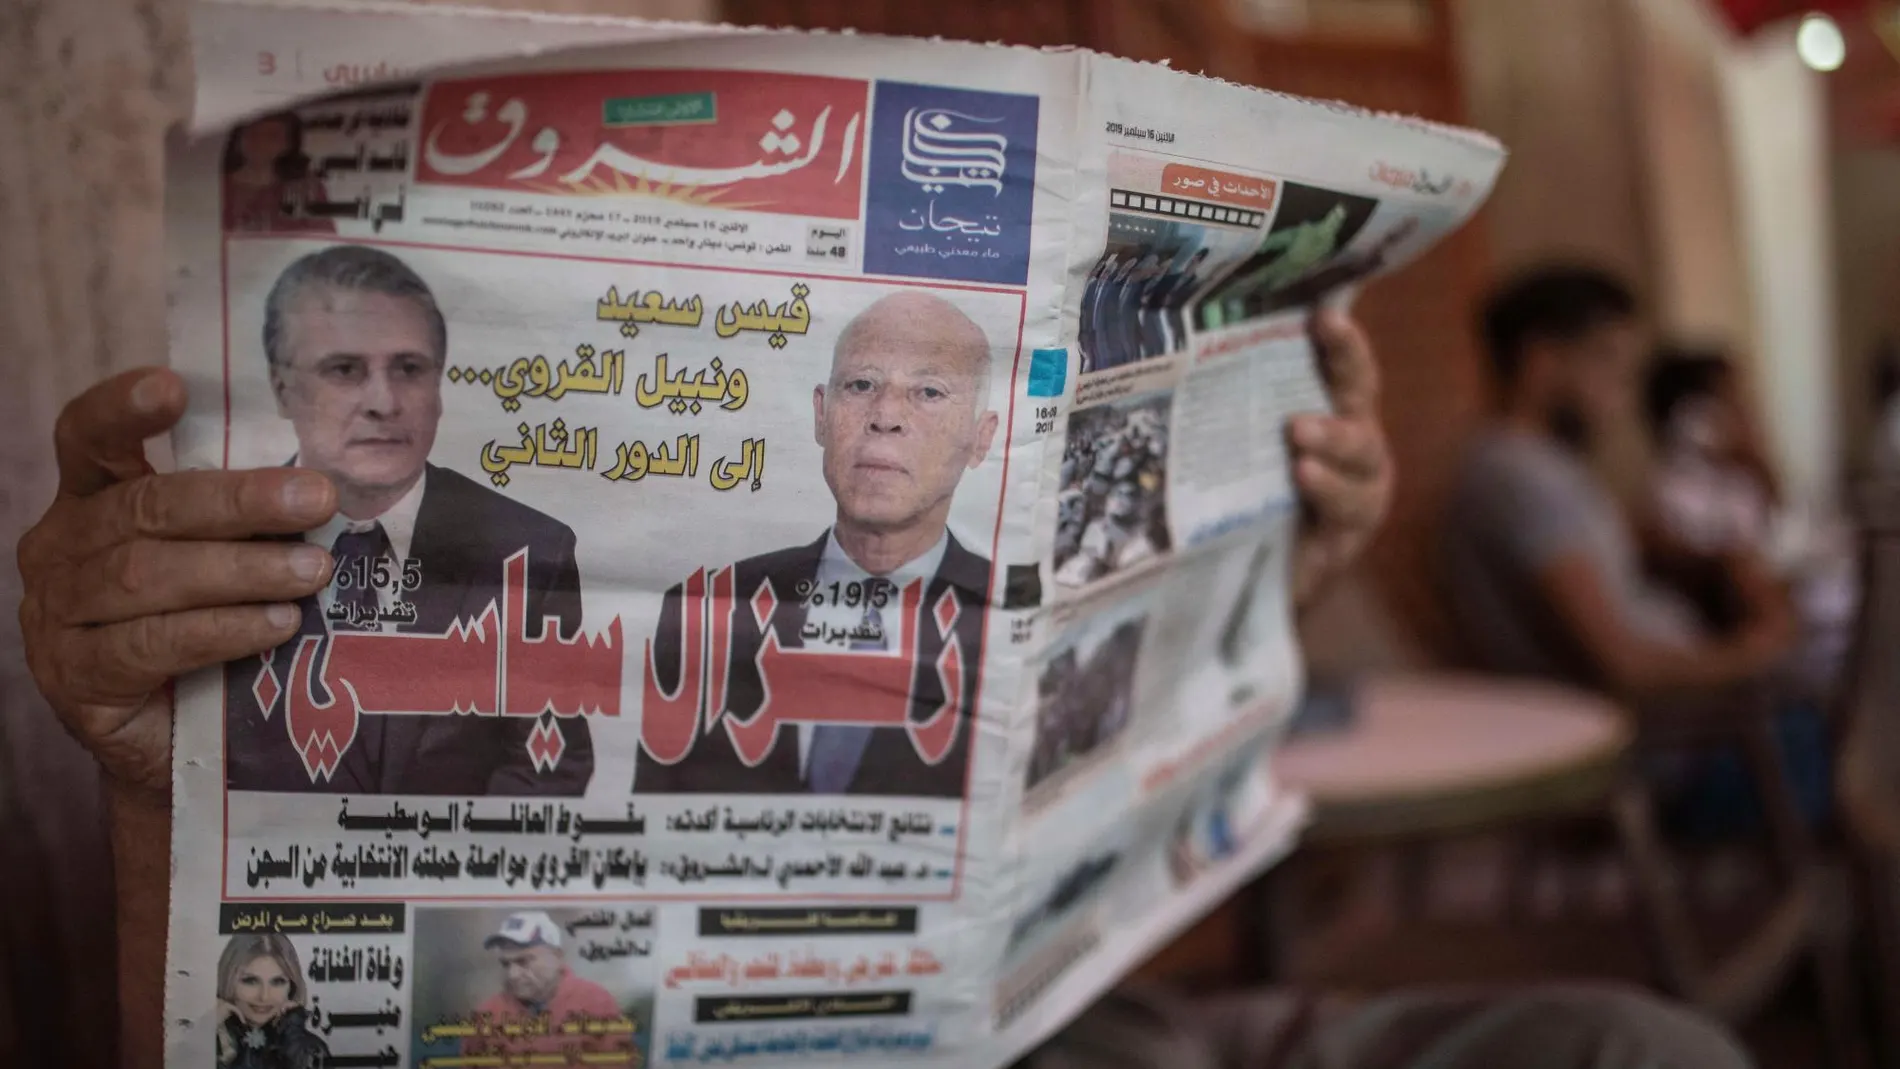 El diario “Al Shorouk” muestra a los candidatos Kais Saied y Nabil Karoui en su portada/ AP